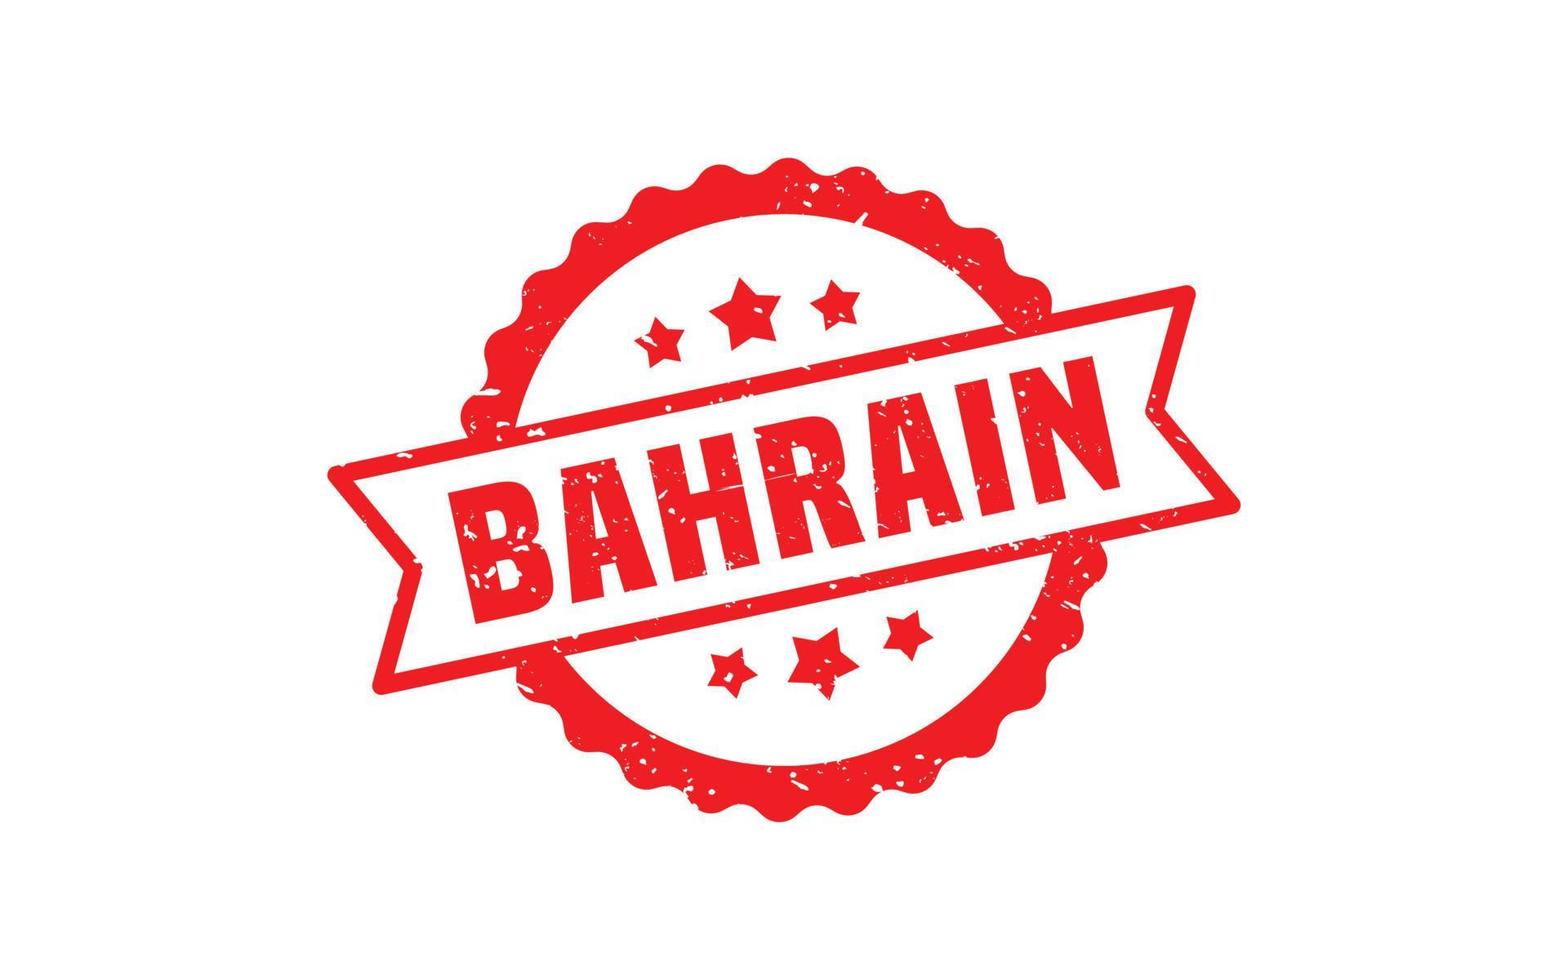 Bahrain-Stempelgummi mit Grunge-Stil auf weißem Hintergrund vektor